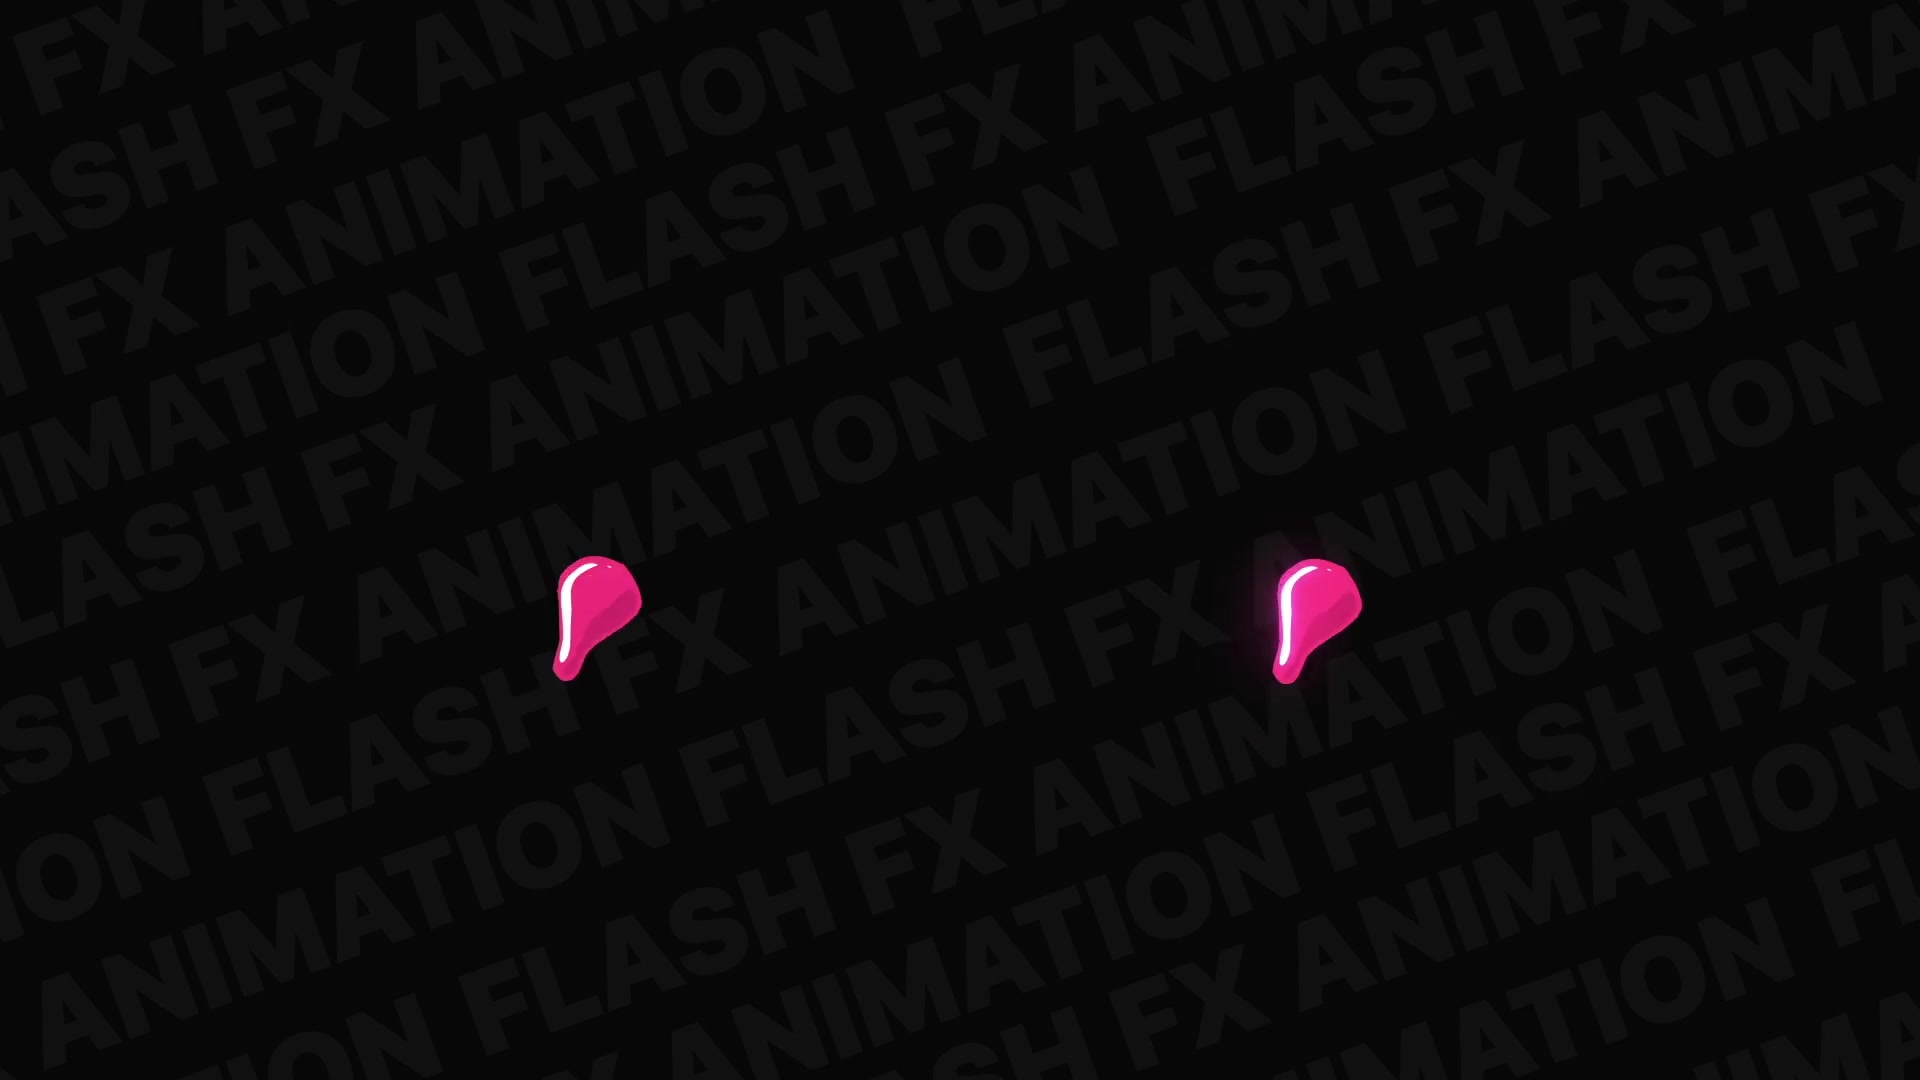 Flash FX Elements Pack | Premiere Pro MOGRT Videohive 32640445 Premiere Pro Image 8